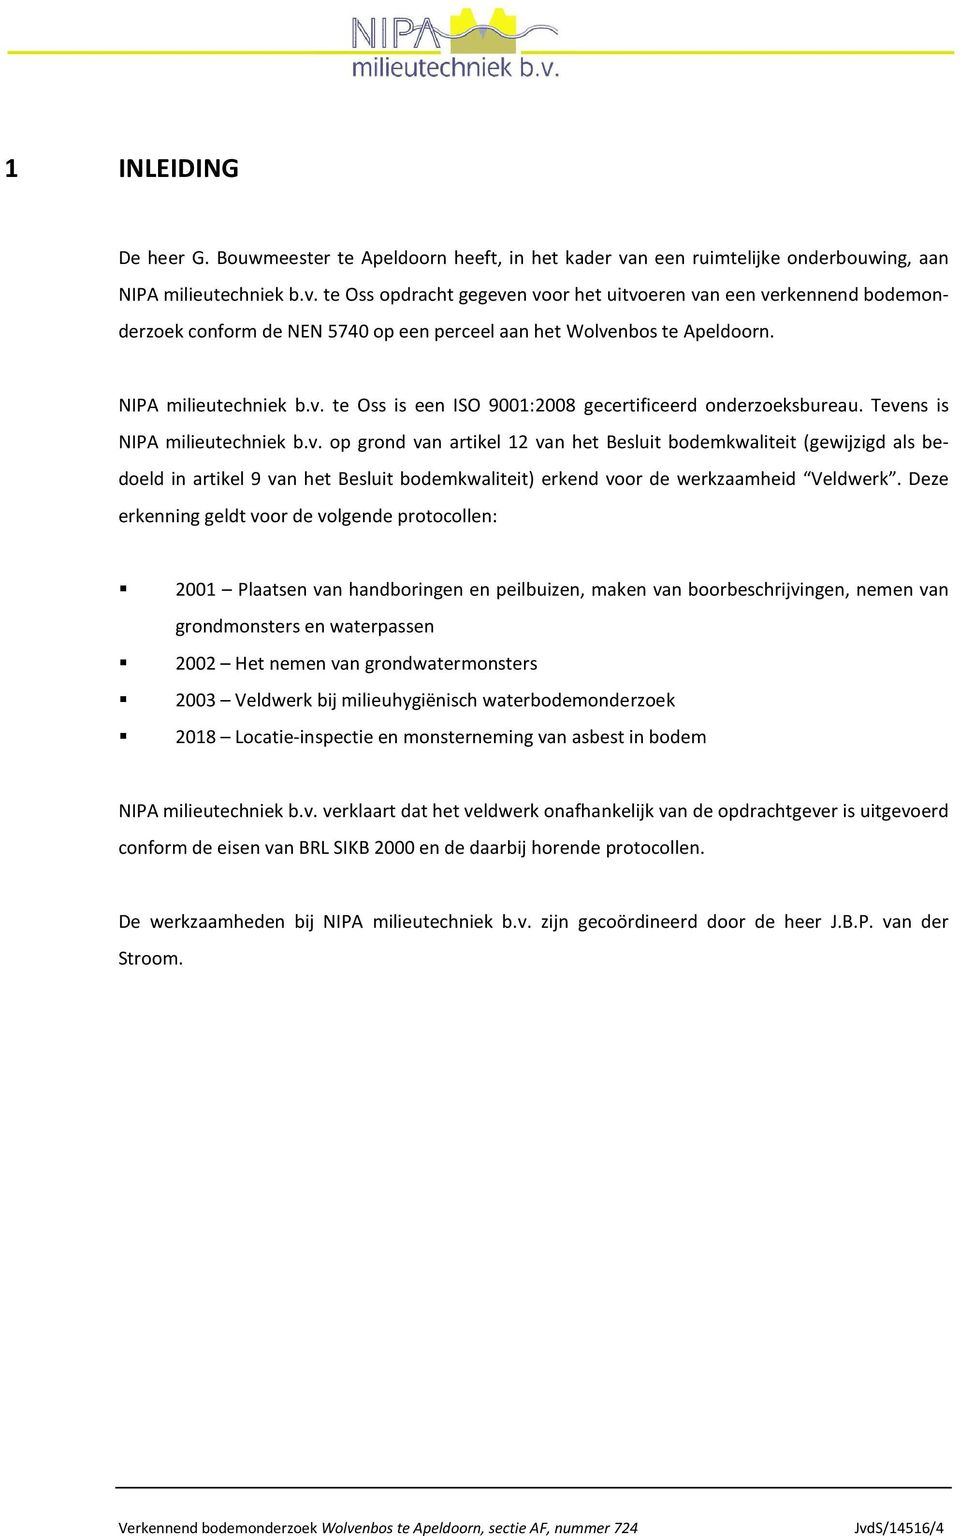 te Oss opdracht gegeven voor het uitvoeren van een verkennend bodemonderzoek conform de NEN 5740 op een perceel aan het Wolvenbos te Apeldoorn. NIPA milieutechniek b.v. te Oss is een ISO 9001:2008 gecertificeerd onderzoeksbureau.